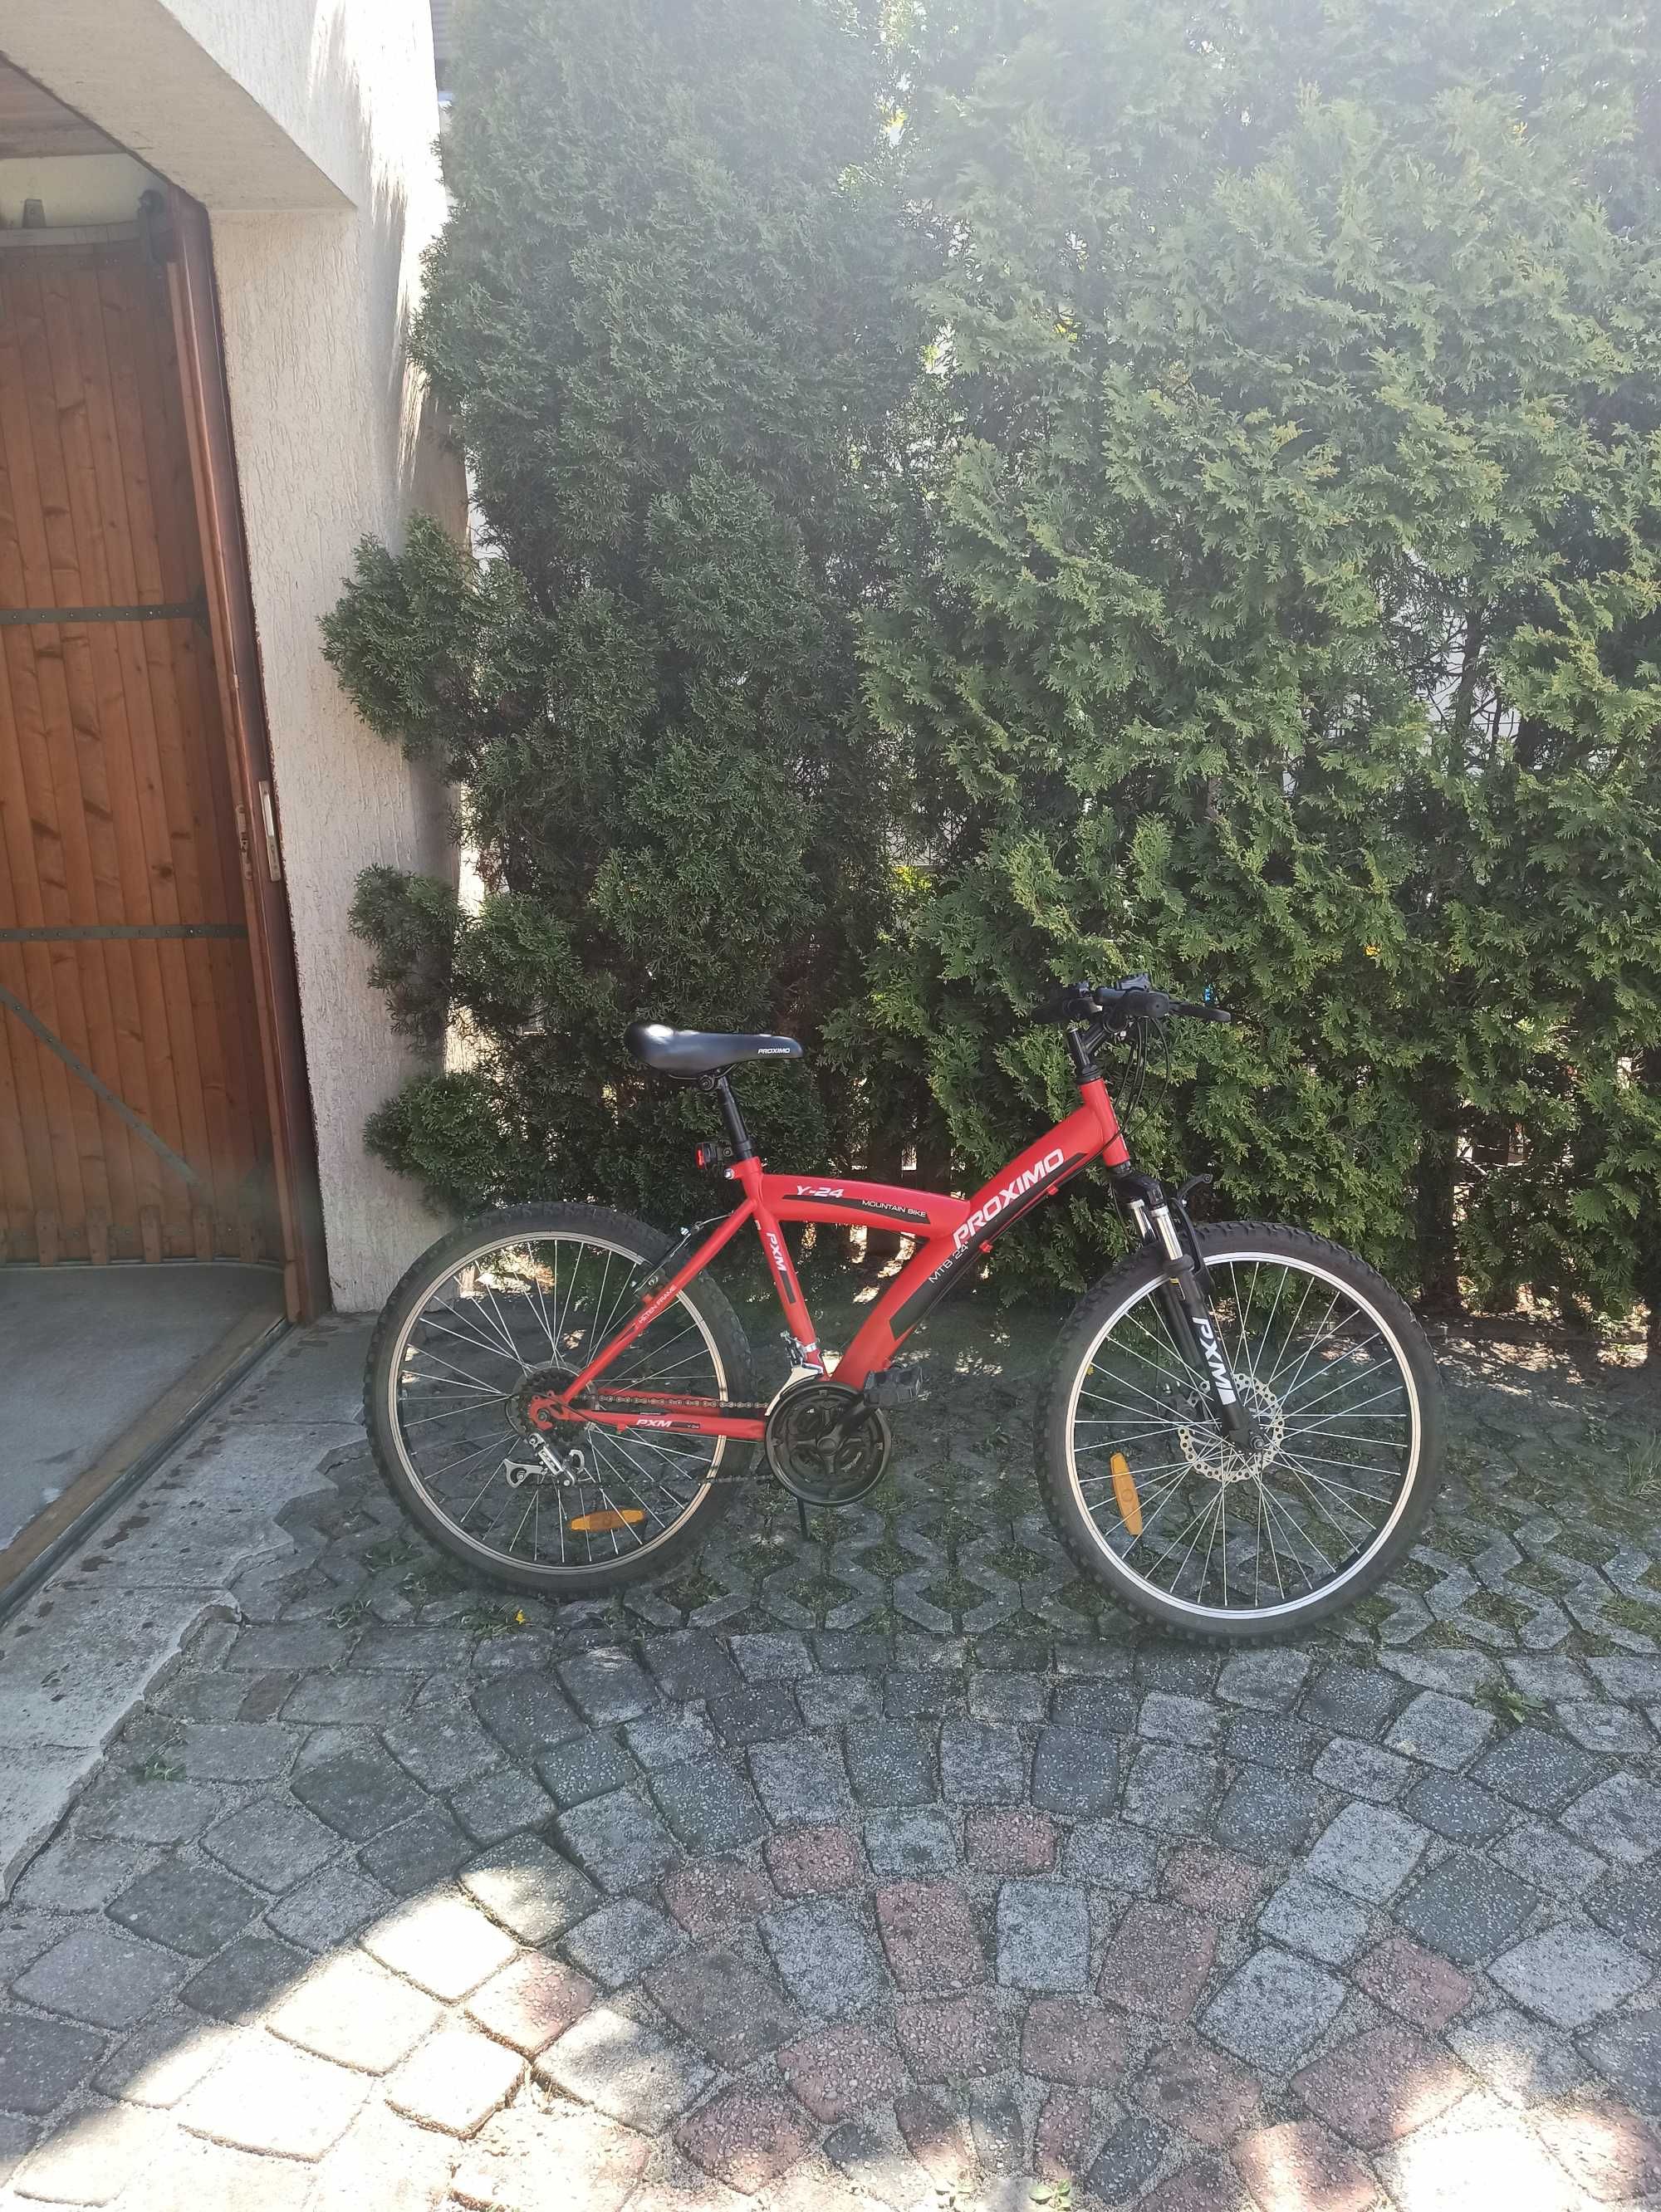 Czerwony rower 24” cale